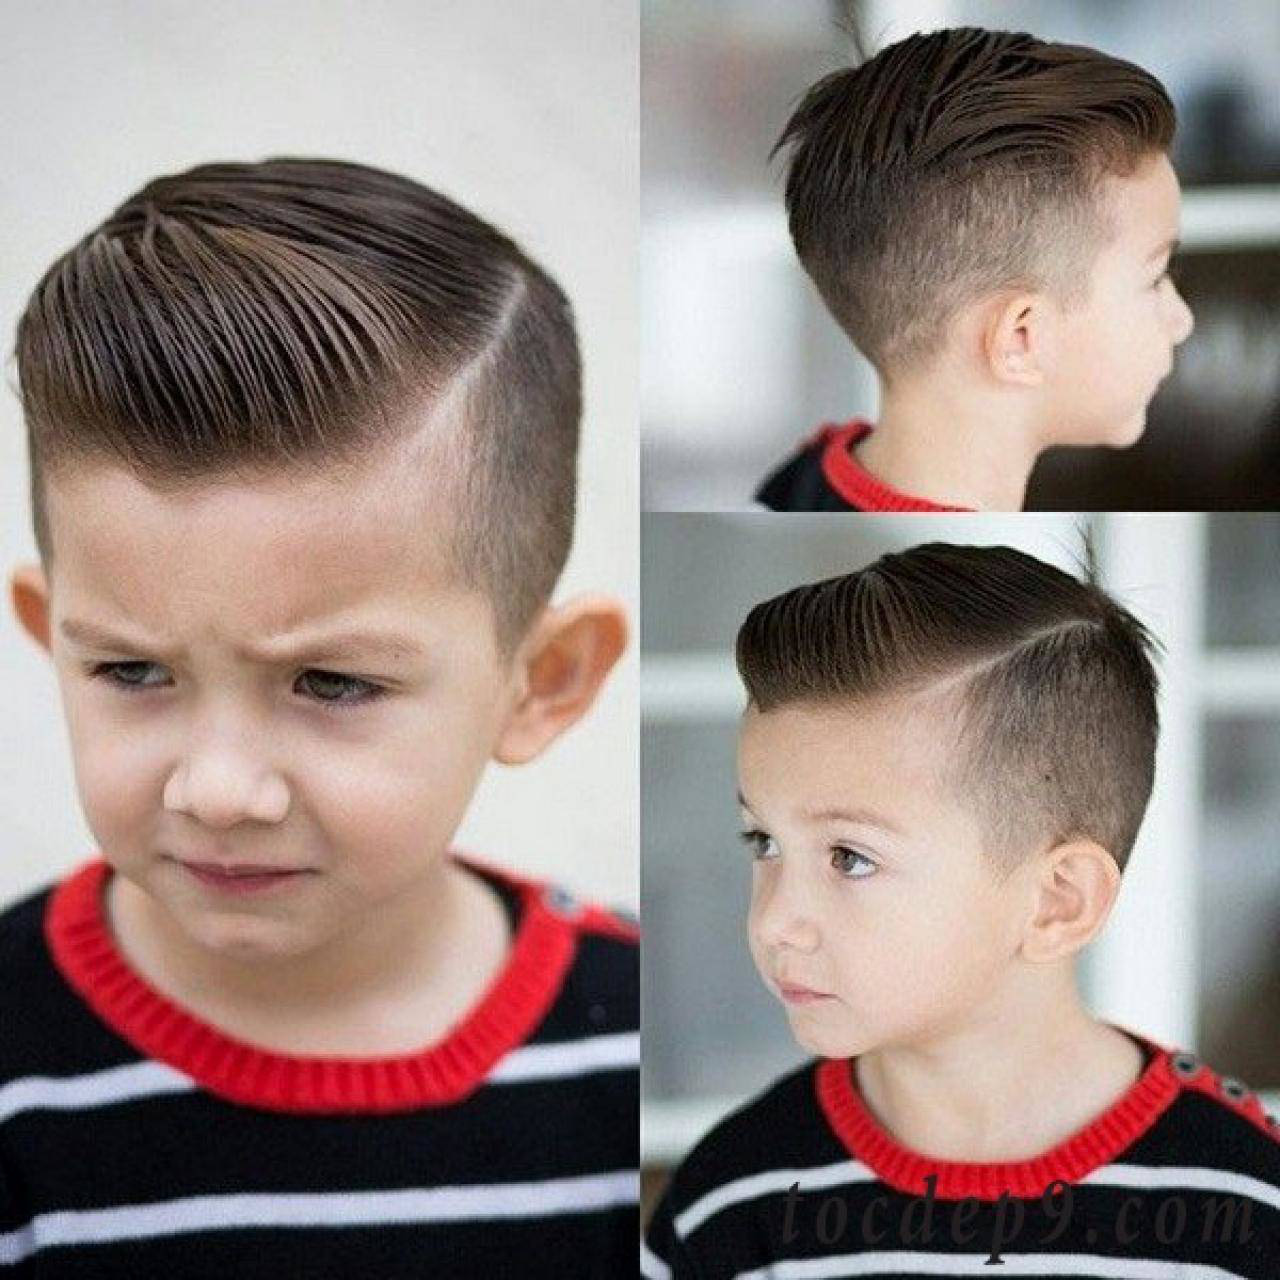 Việc cắt tóc cho bé trai không phải lúc nào cũng dễ dàng và thuận tiện. Tuy nhiên, với hình ảnh này, bạn sẽ được hướng dẫn cách cắt tóc cho bé tại nhà một cách dễ dàng và an toàn. Xem ngay để tìm hiểu và áp dụng vào cho con trai của bạn!